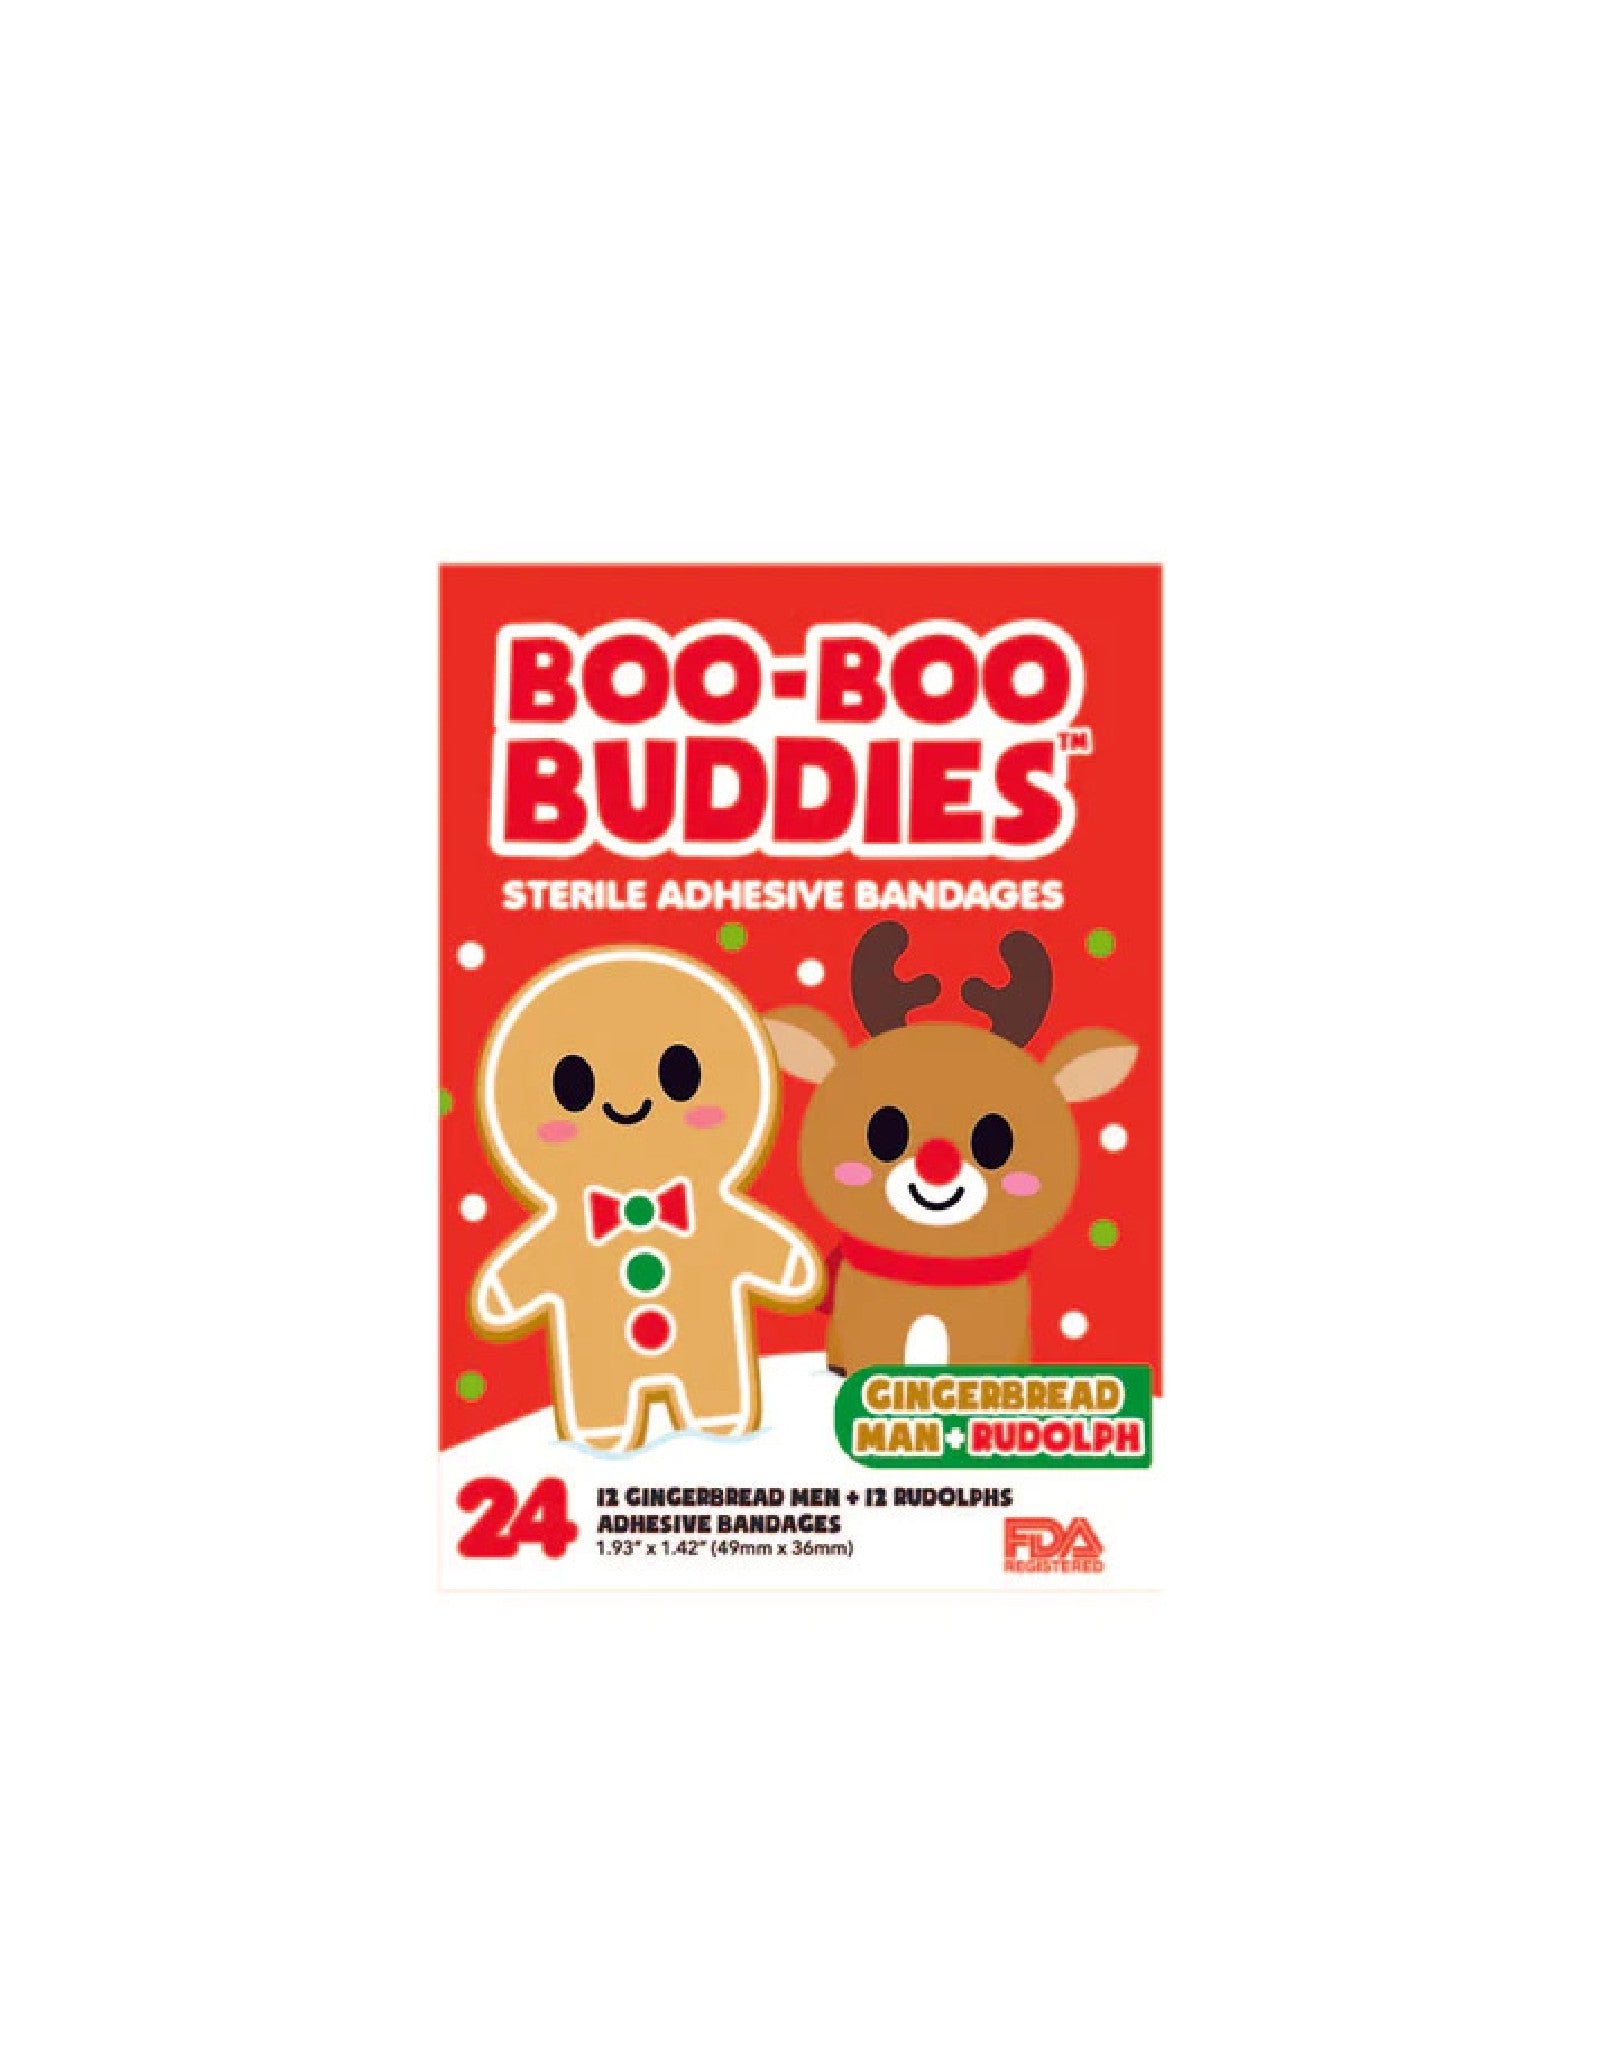 Pansement pour enfant - Bacon et oeuf - Boo-Boo Buddies – Veille sur toi